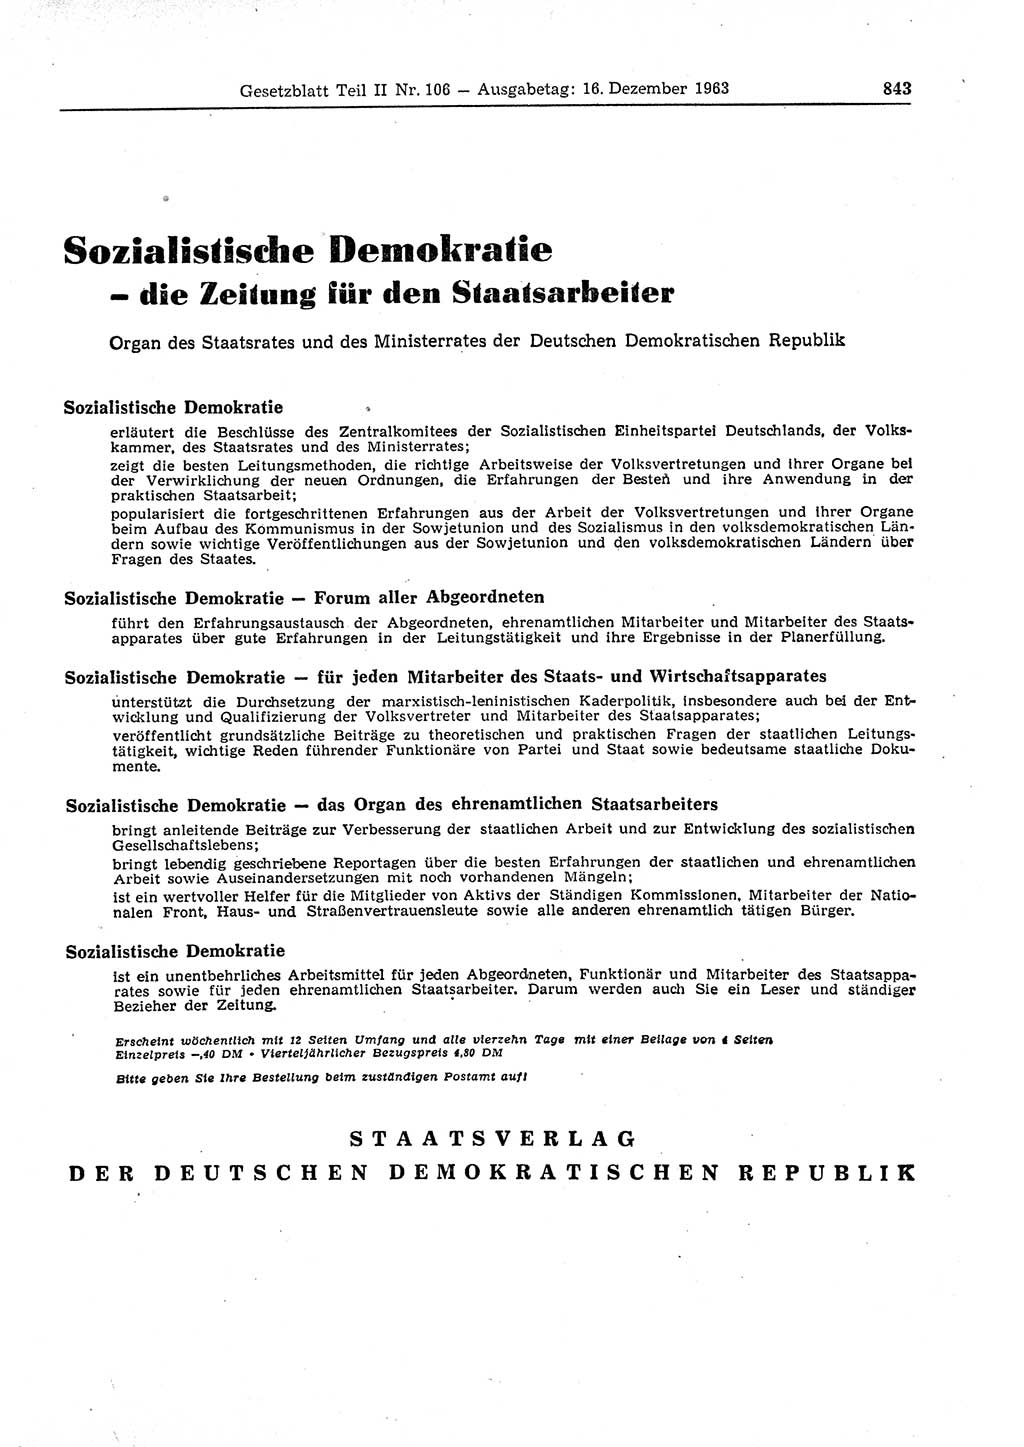 Gesetzblatt (GBl.) der Deutschen Demokratischen Republik (DDR) Teil ⅠⅠ 1963, Seite 843 (GBl. DDR ⅠⅠ 1963, S. 843)